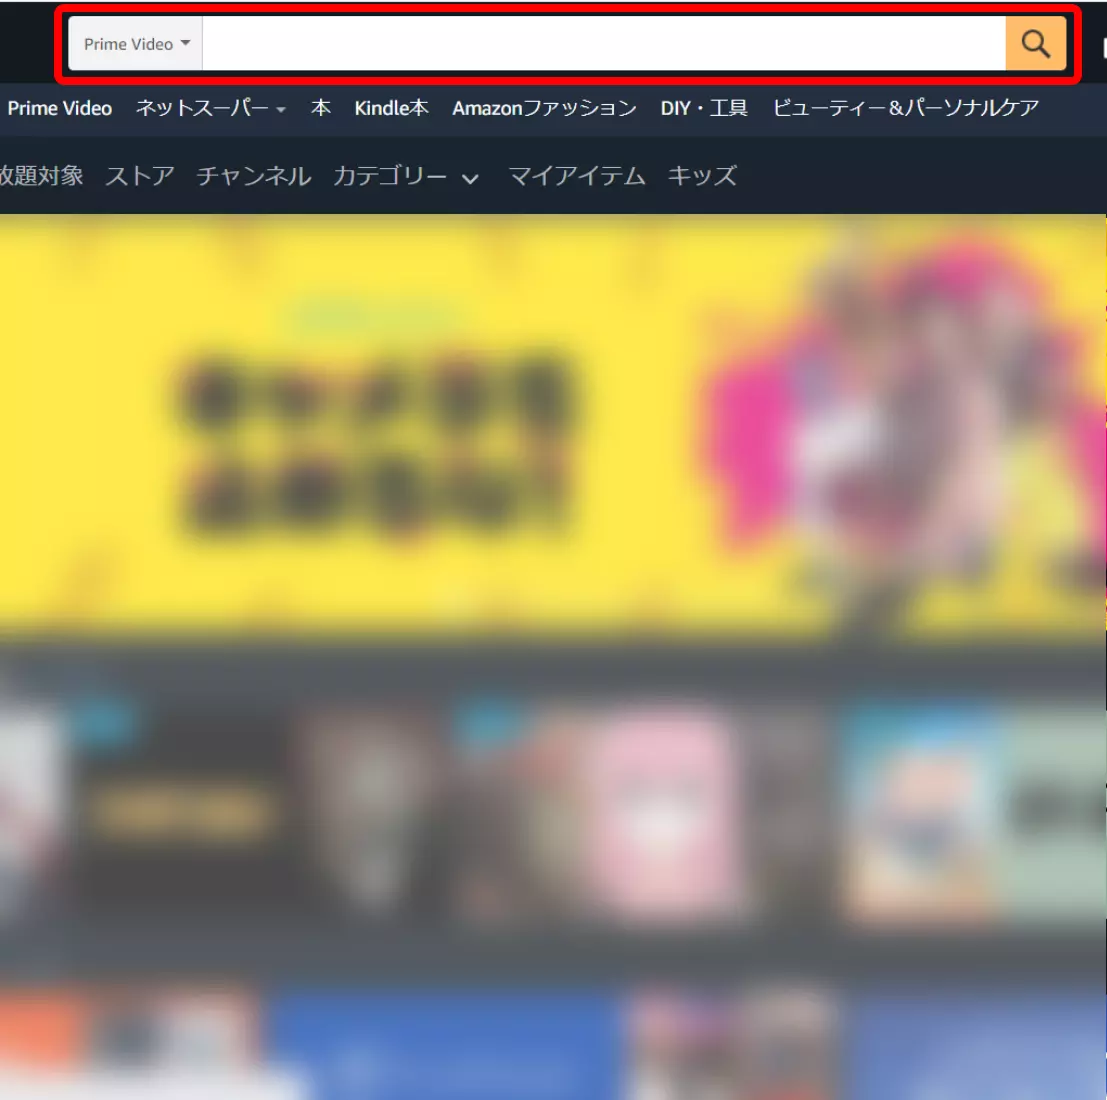 パソコンブラウザで開いたAmazonの「Prime Video」ページの検索窓を赤枠で囲ったキャプチャ画像